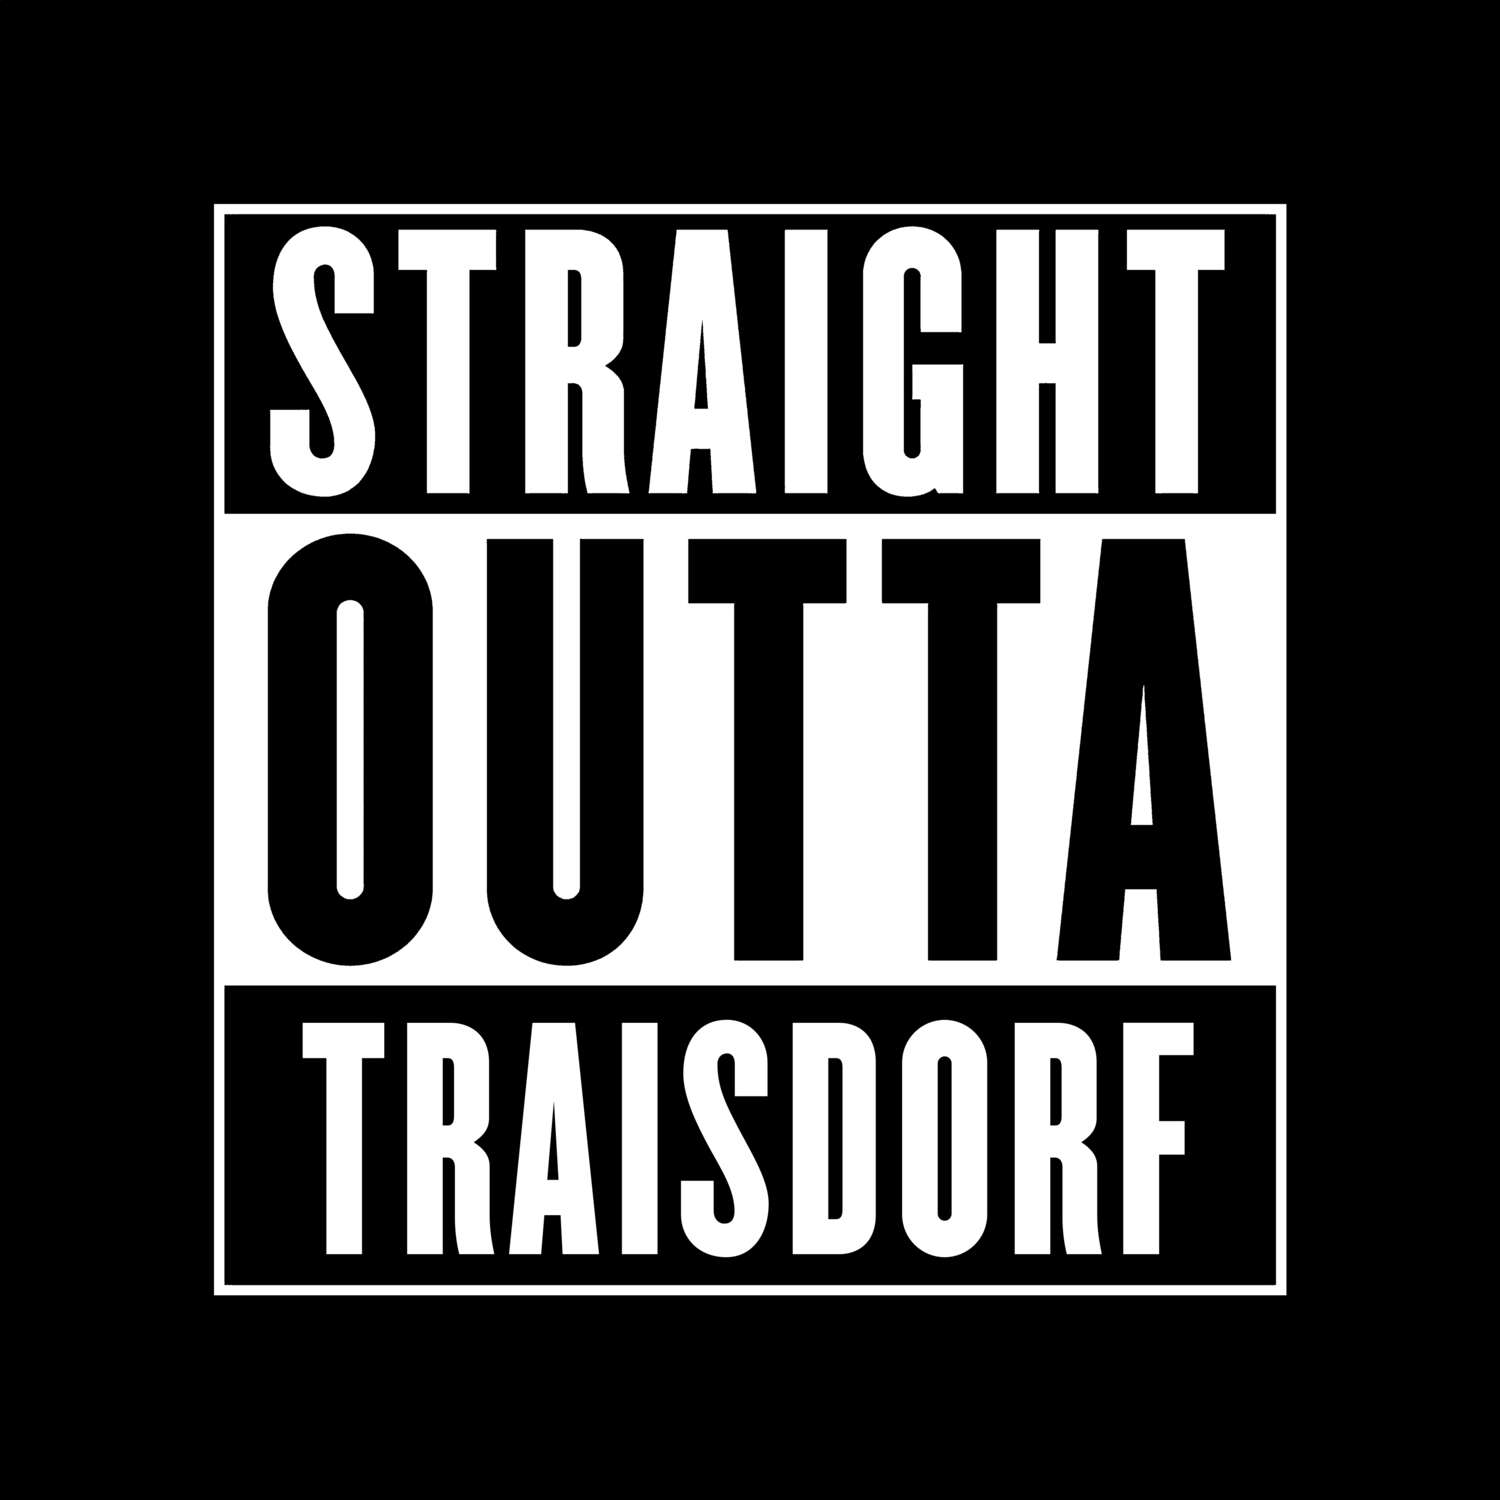 Traisdorf T-Shirt »Straight Outta«